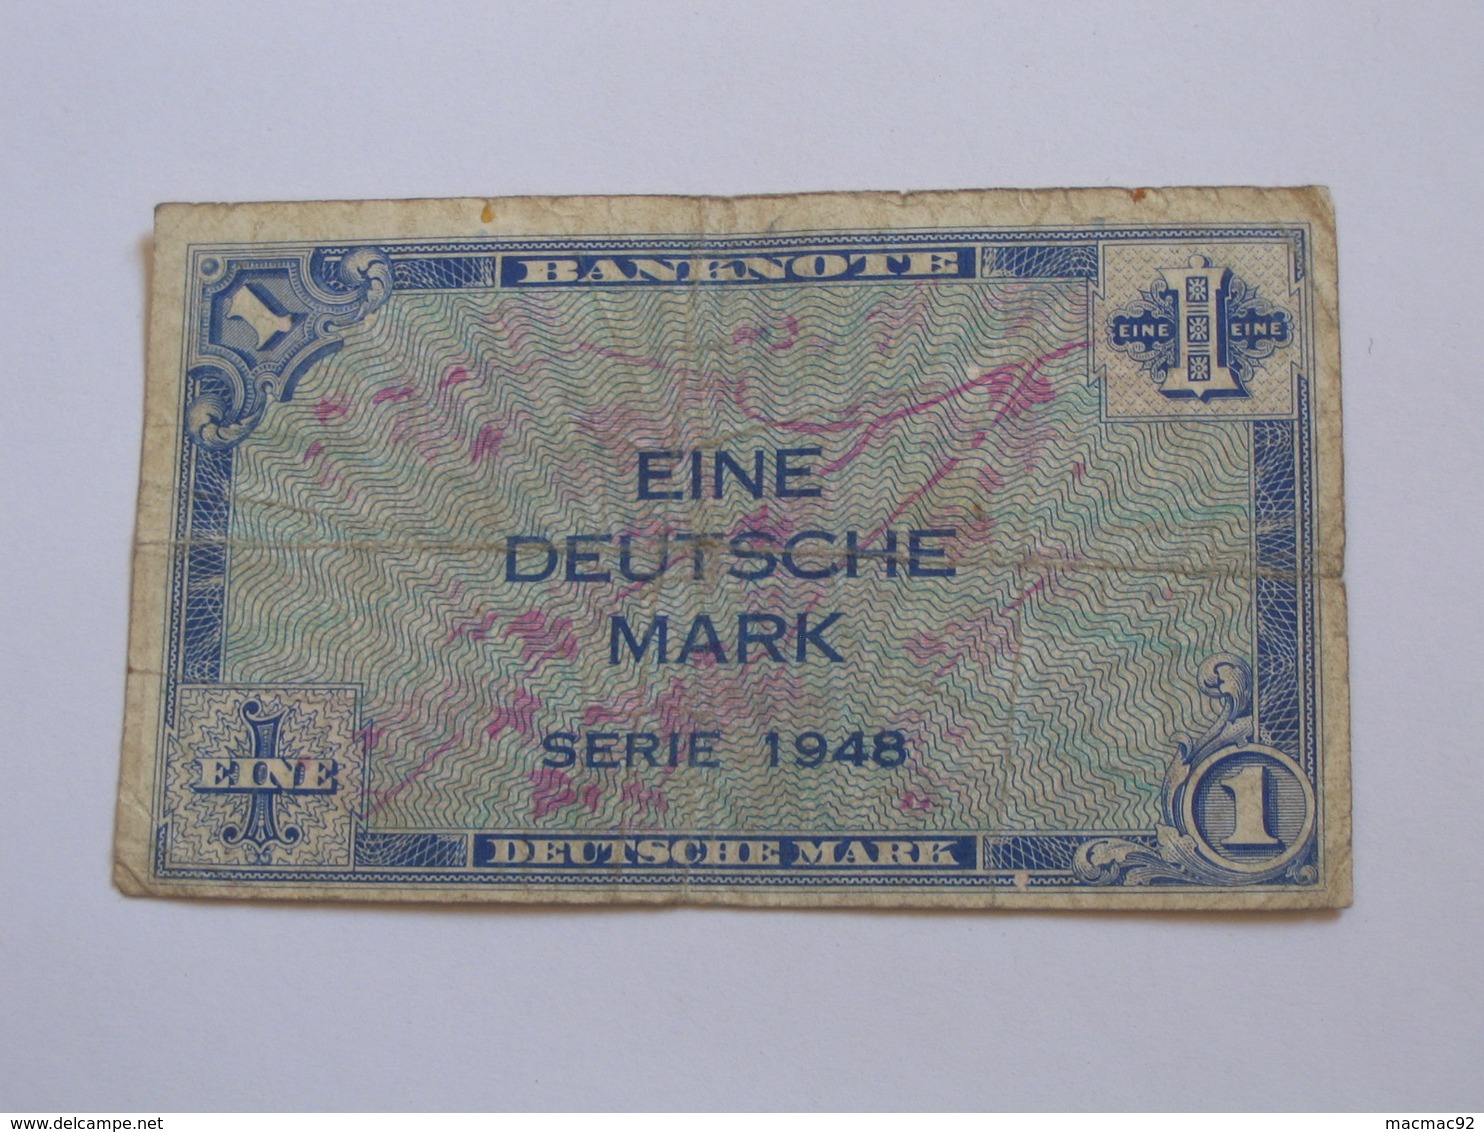 1 Eine Deutsche Mark Série 1948 - BANKNOTE - Allied Occupation WWII - ALLEMAGNE   **** EN ACHAT IMMEDIAT **** - 1 Mark